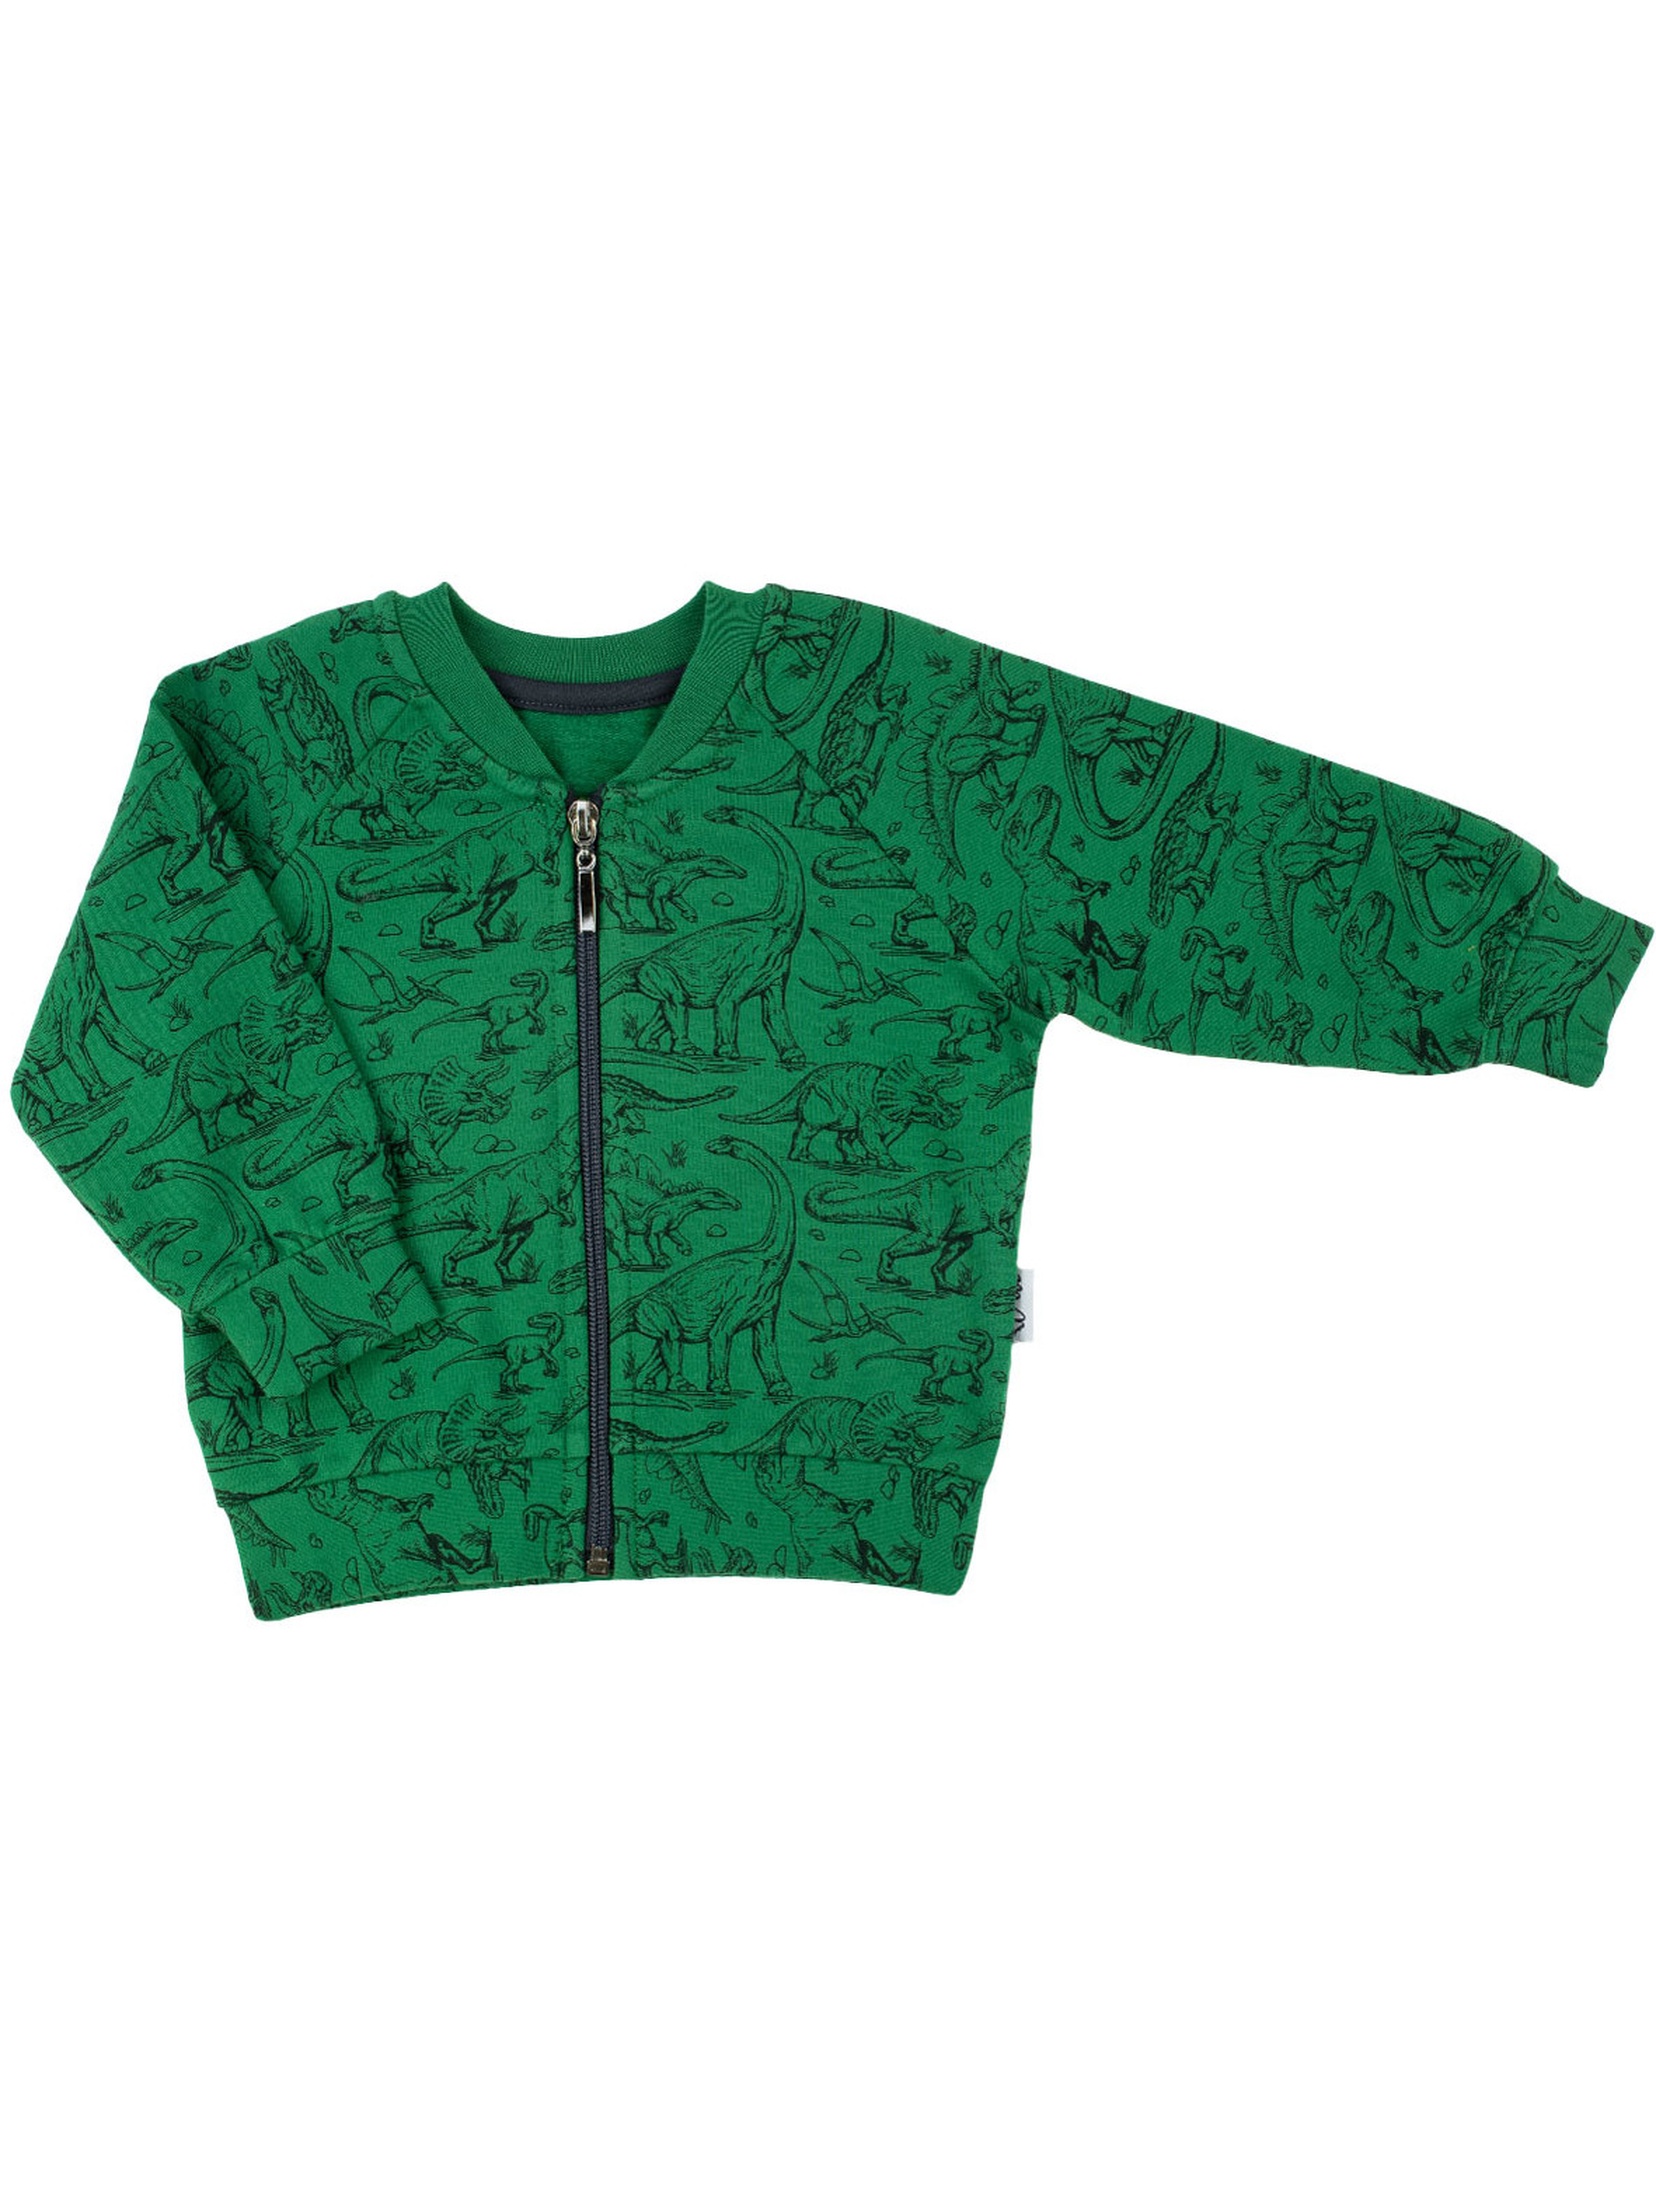 Zielona bluza dresowa chłopięca rozpinana w dinozaury